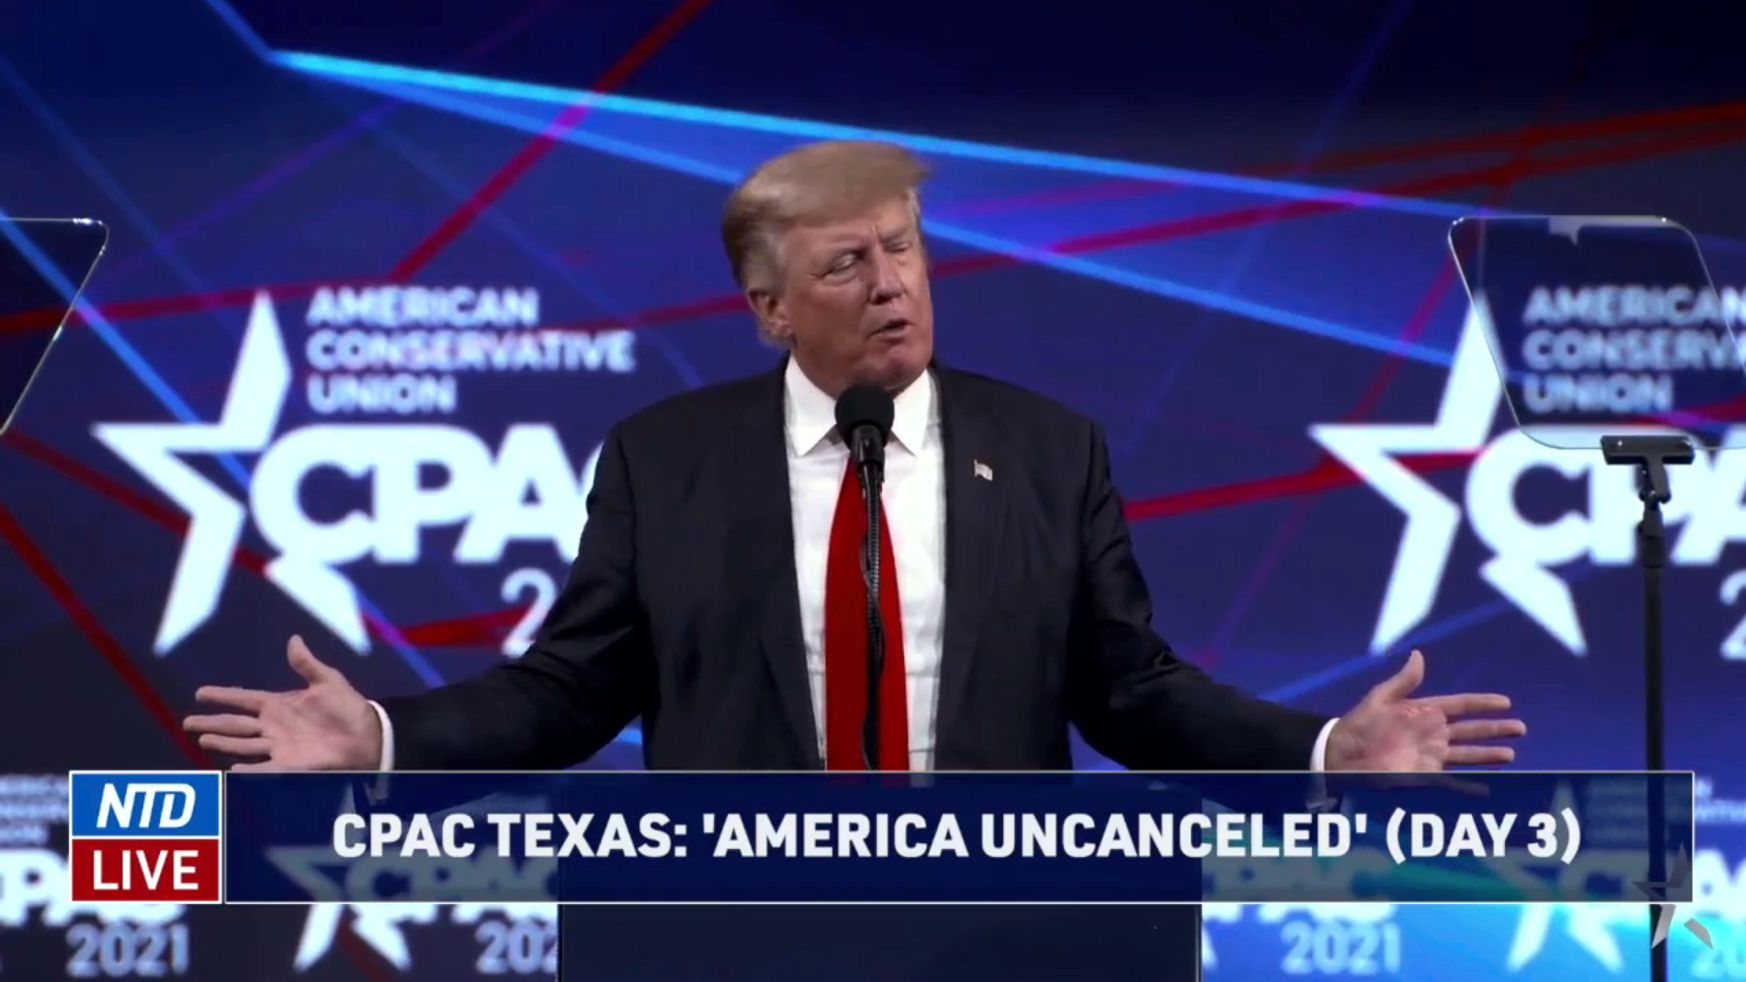 Trump speaks at CPAC Texas 2021